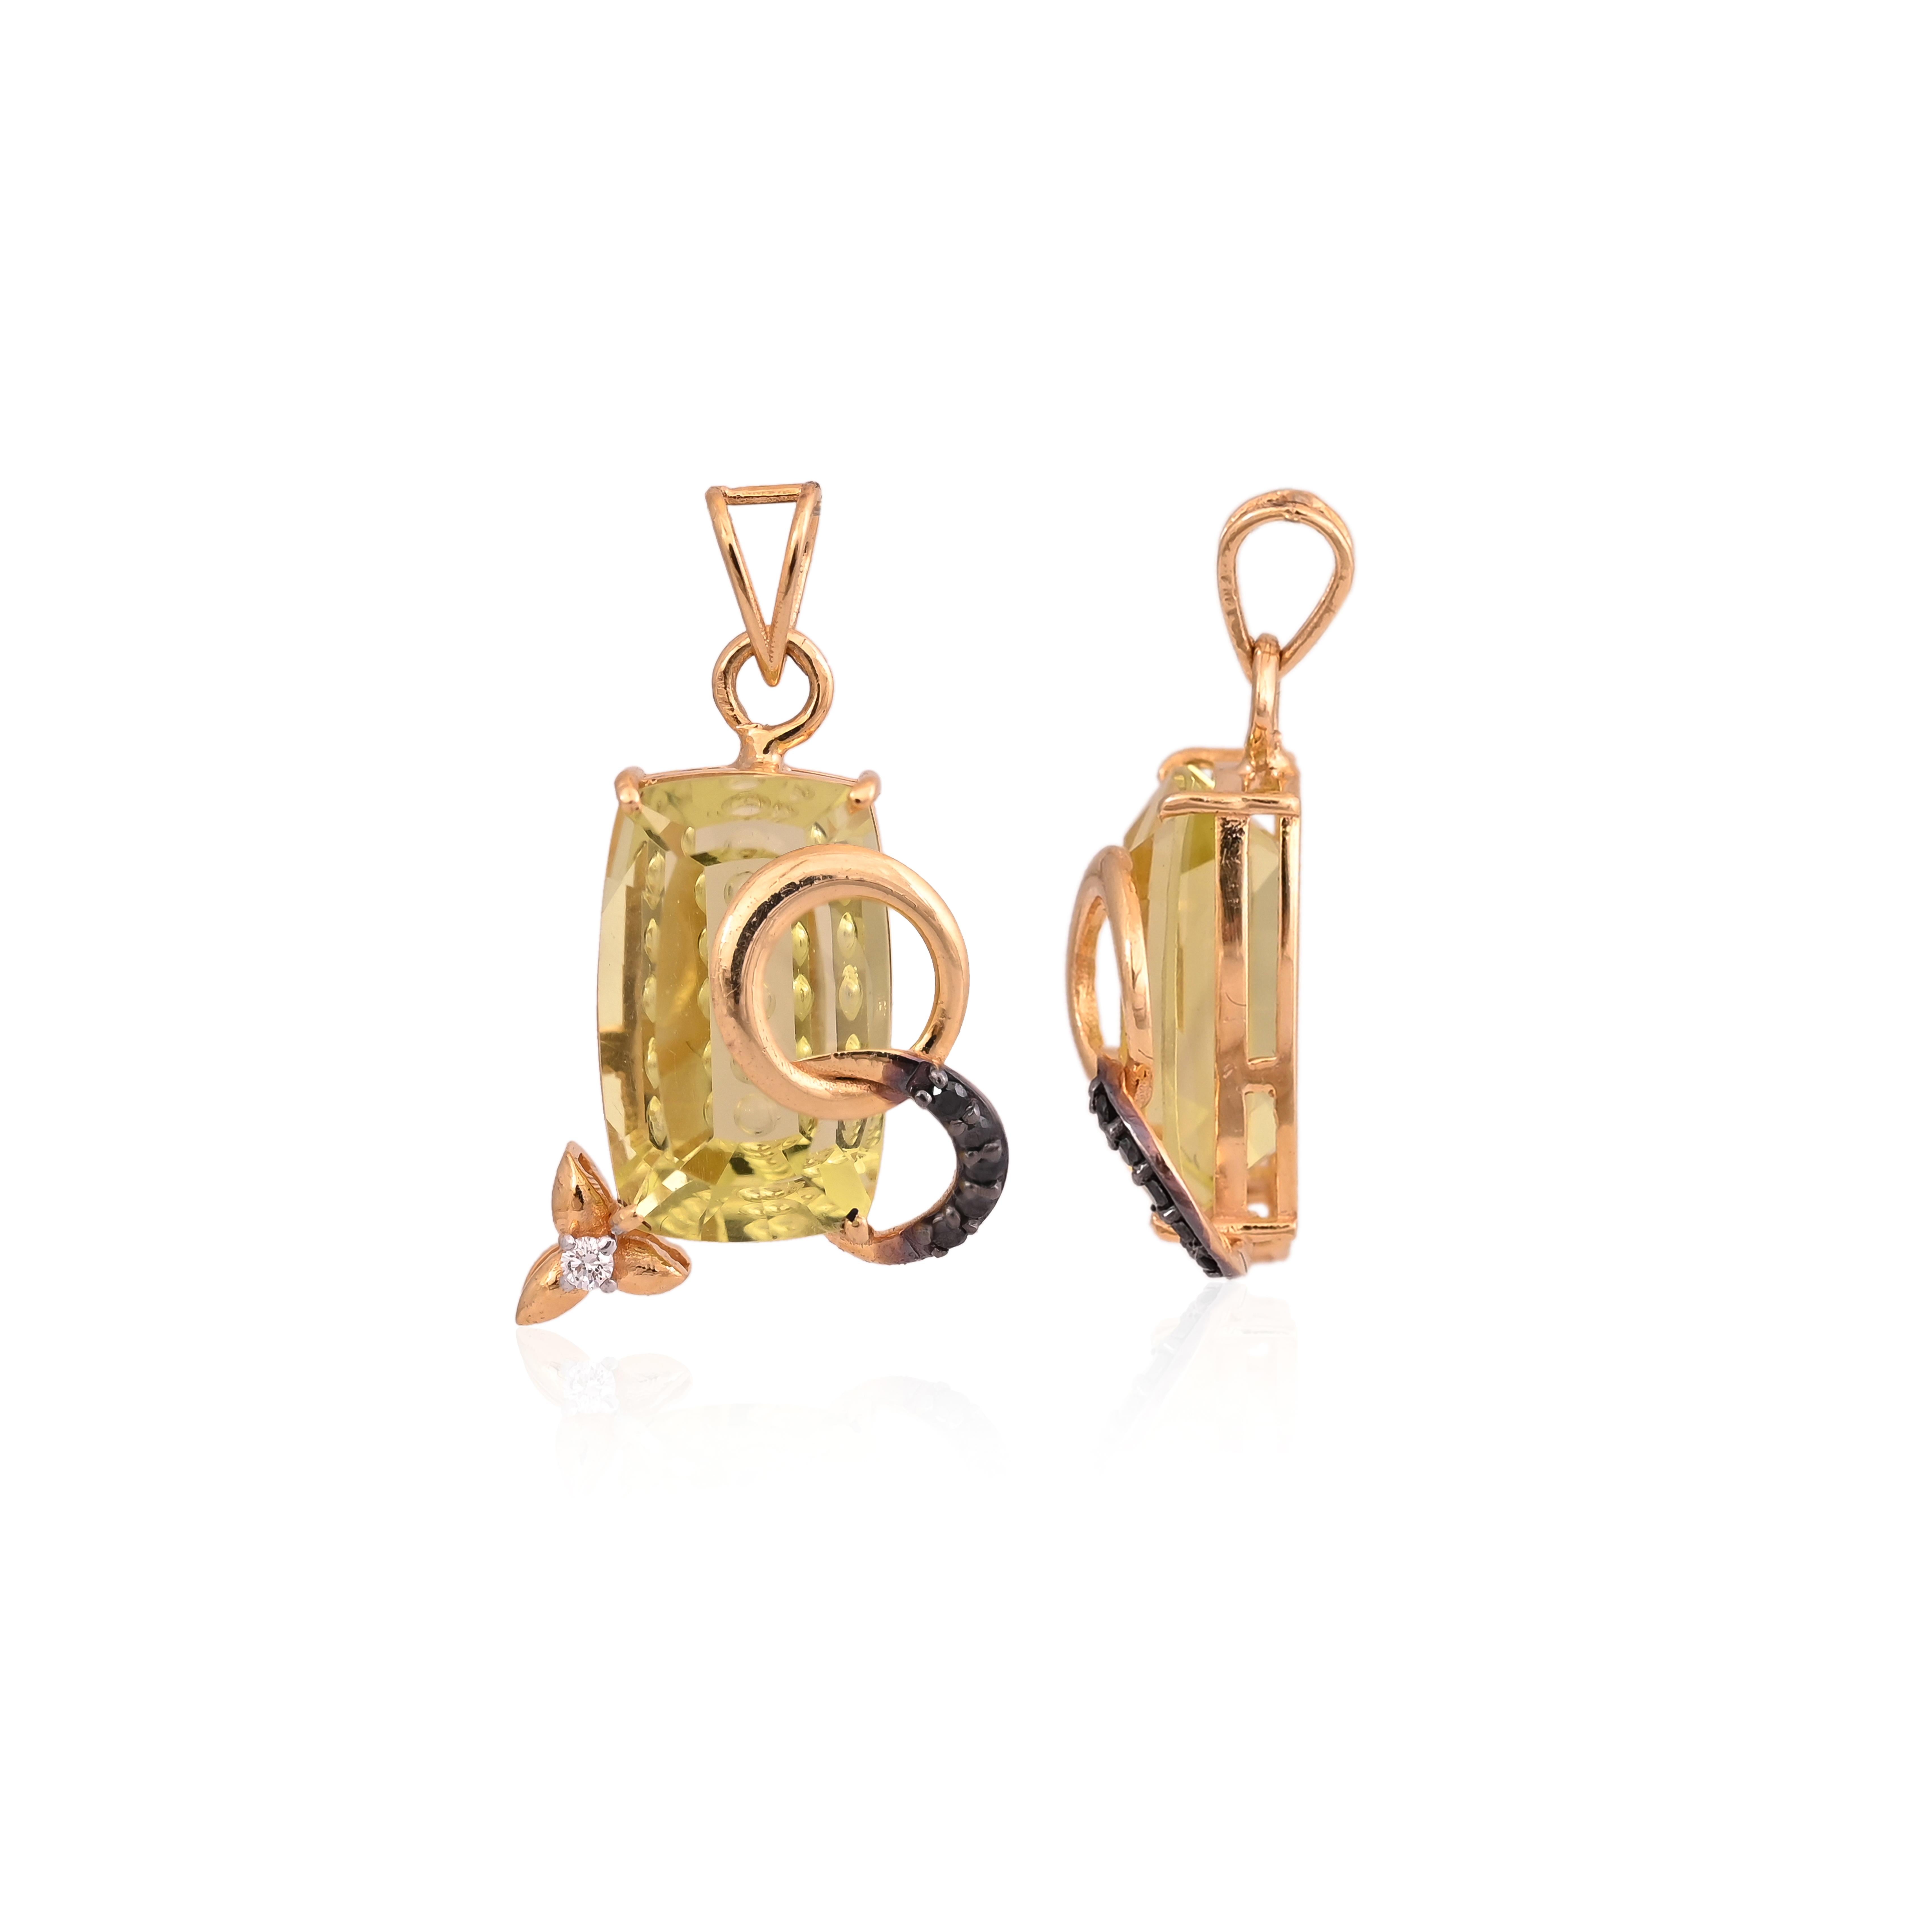 Modern Set in 18K Gold, Lemon Topaz & Black Diamonds Pendant Necklace & Stud Earrings For Sale